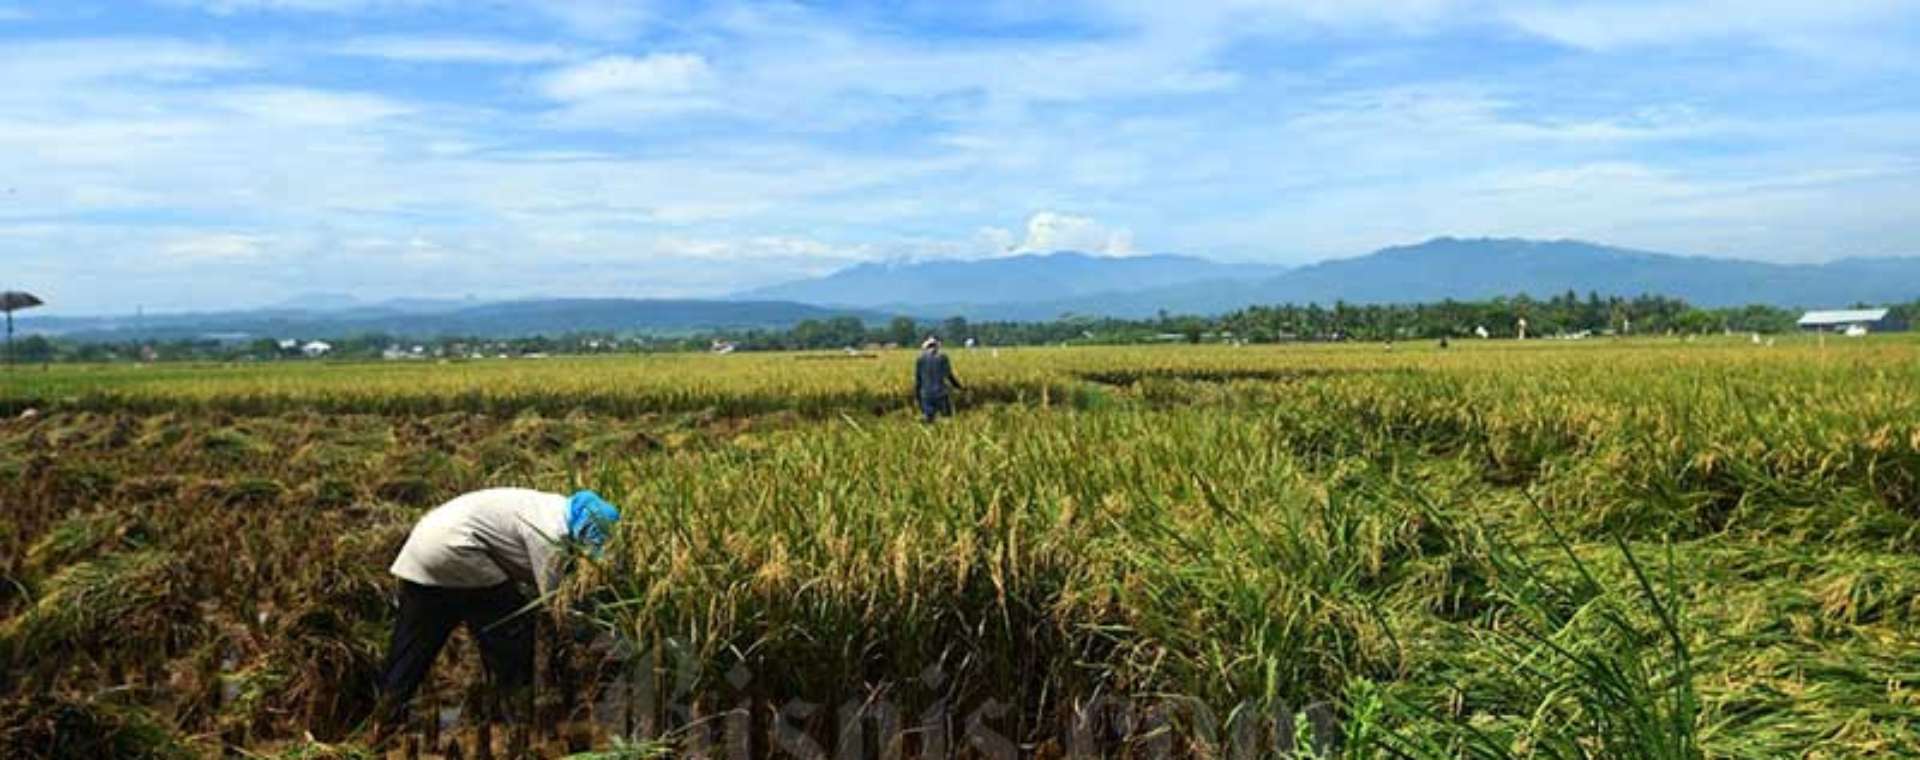 Petani memanen padi disawah garapannya di Bogor, Jawa Barat, Sabtu (11/4/2020). Bisnis - Abdurachman. Anomali Cuaca dan Risiko untuk Komoditas Beras 